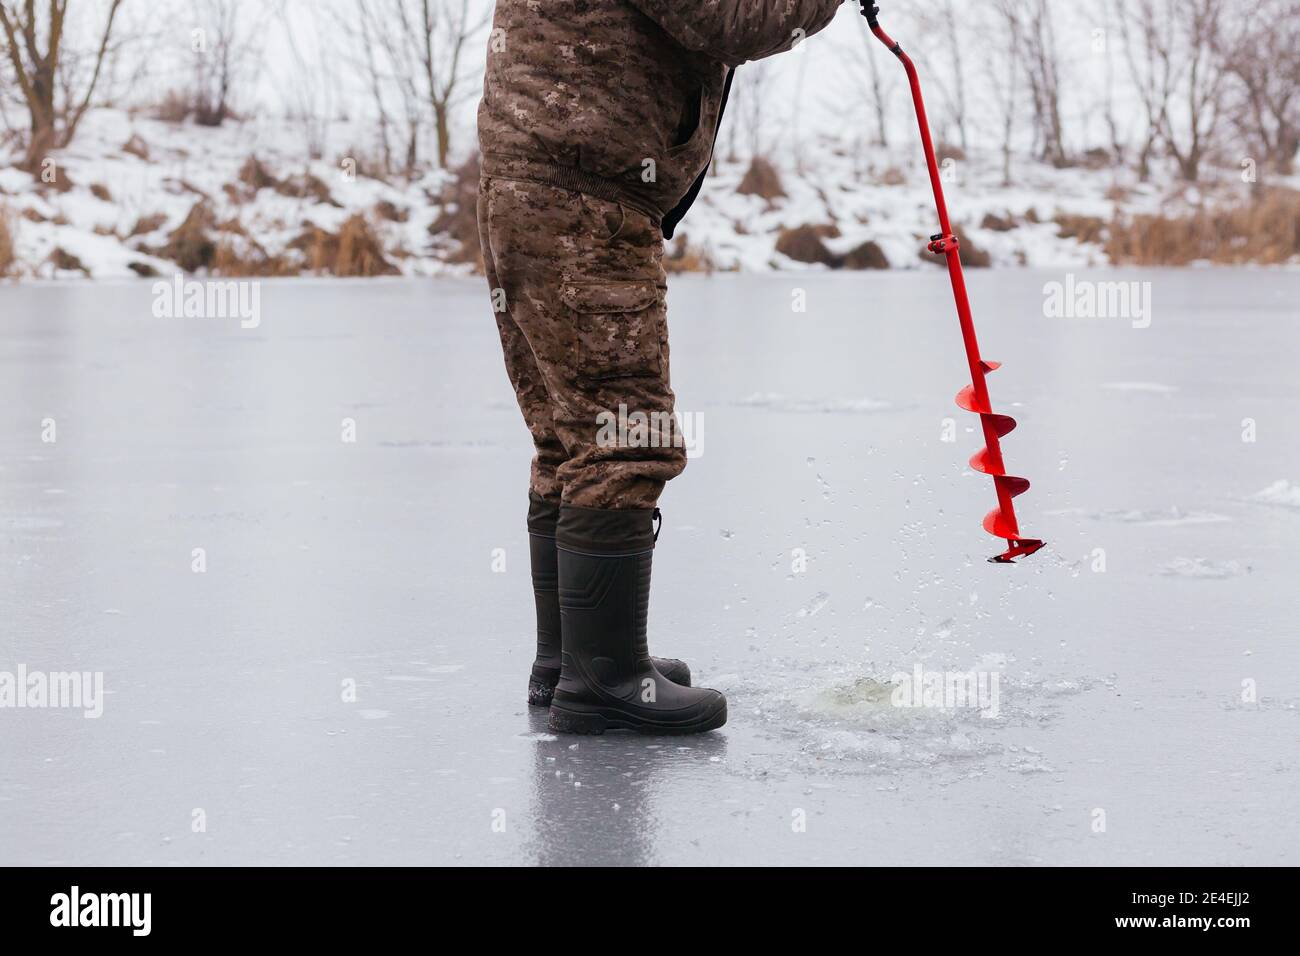 Pescatore senza volto che fa il buco in ghiaccio nevoso al lago da una vite di ghiaccio rossa. Concetto di pesca invernale. Pesca sul ghiaccio Foto Stock